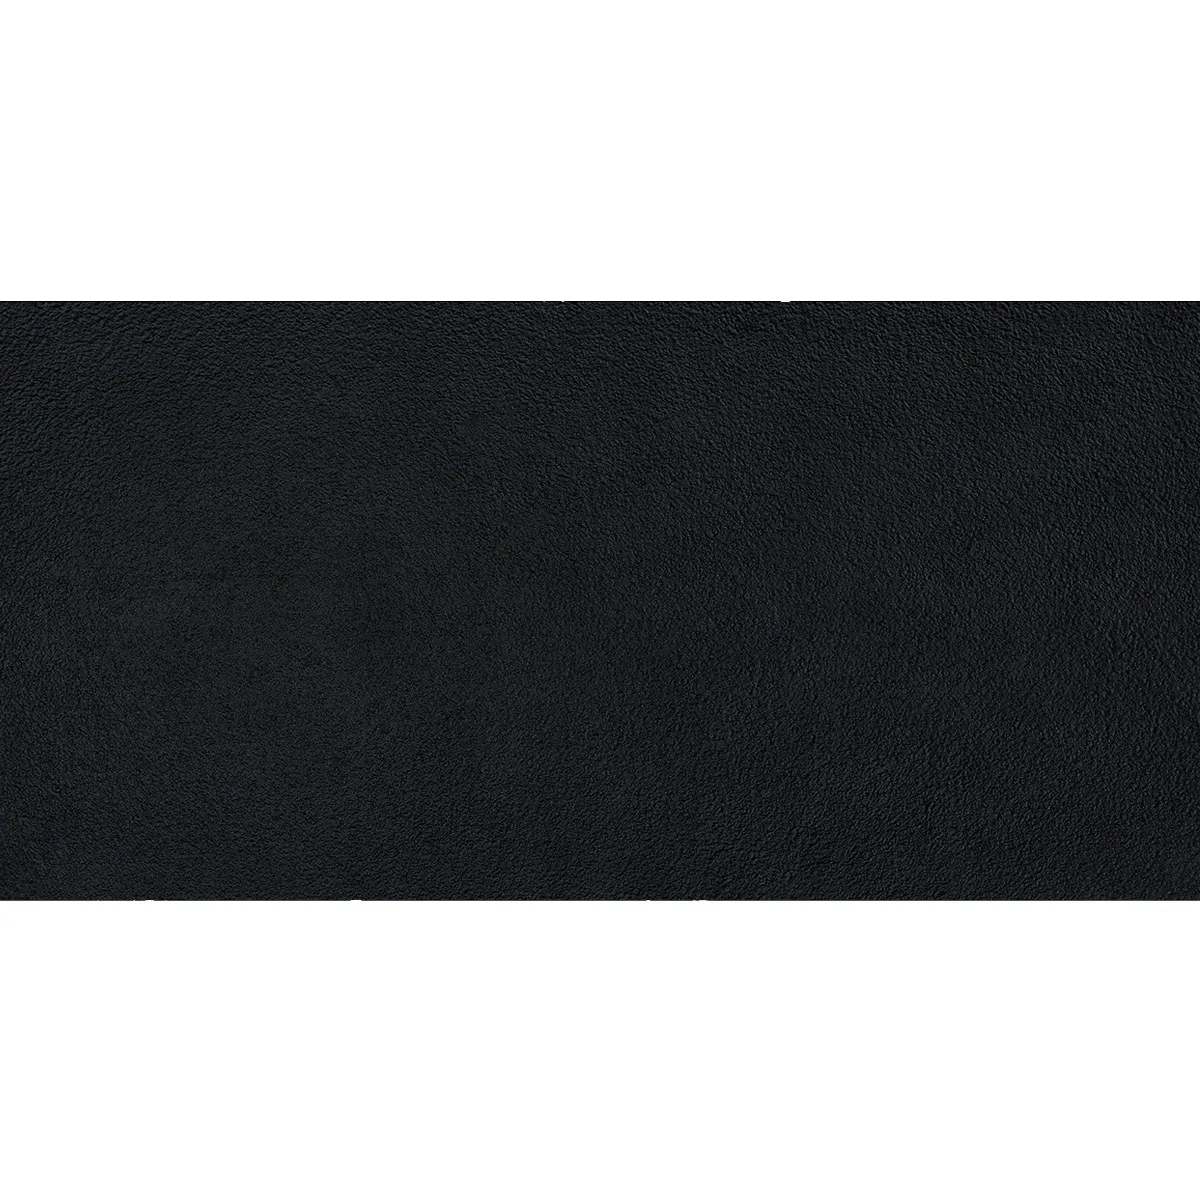 Черно-белые плитки границы плитка для зала черно-белые мраморные плитки с эффектом мрамора черный